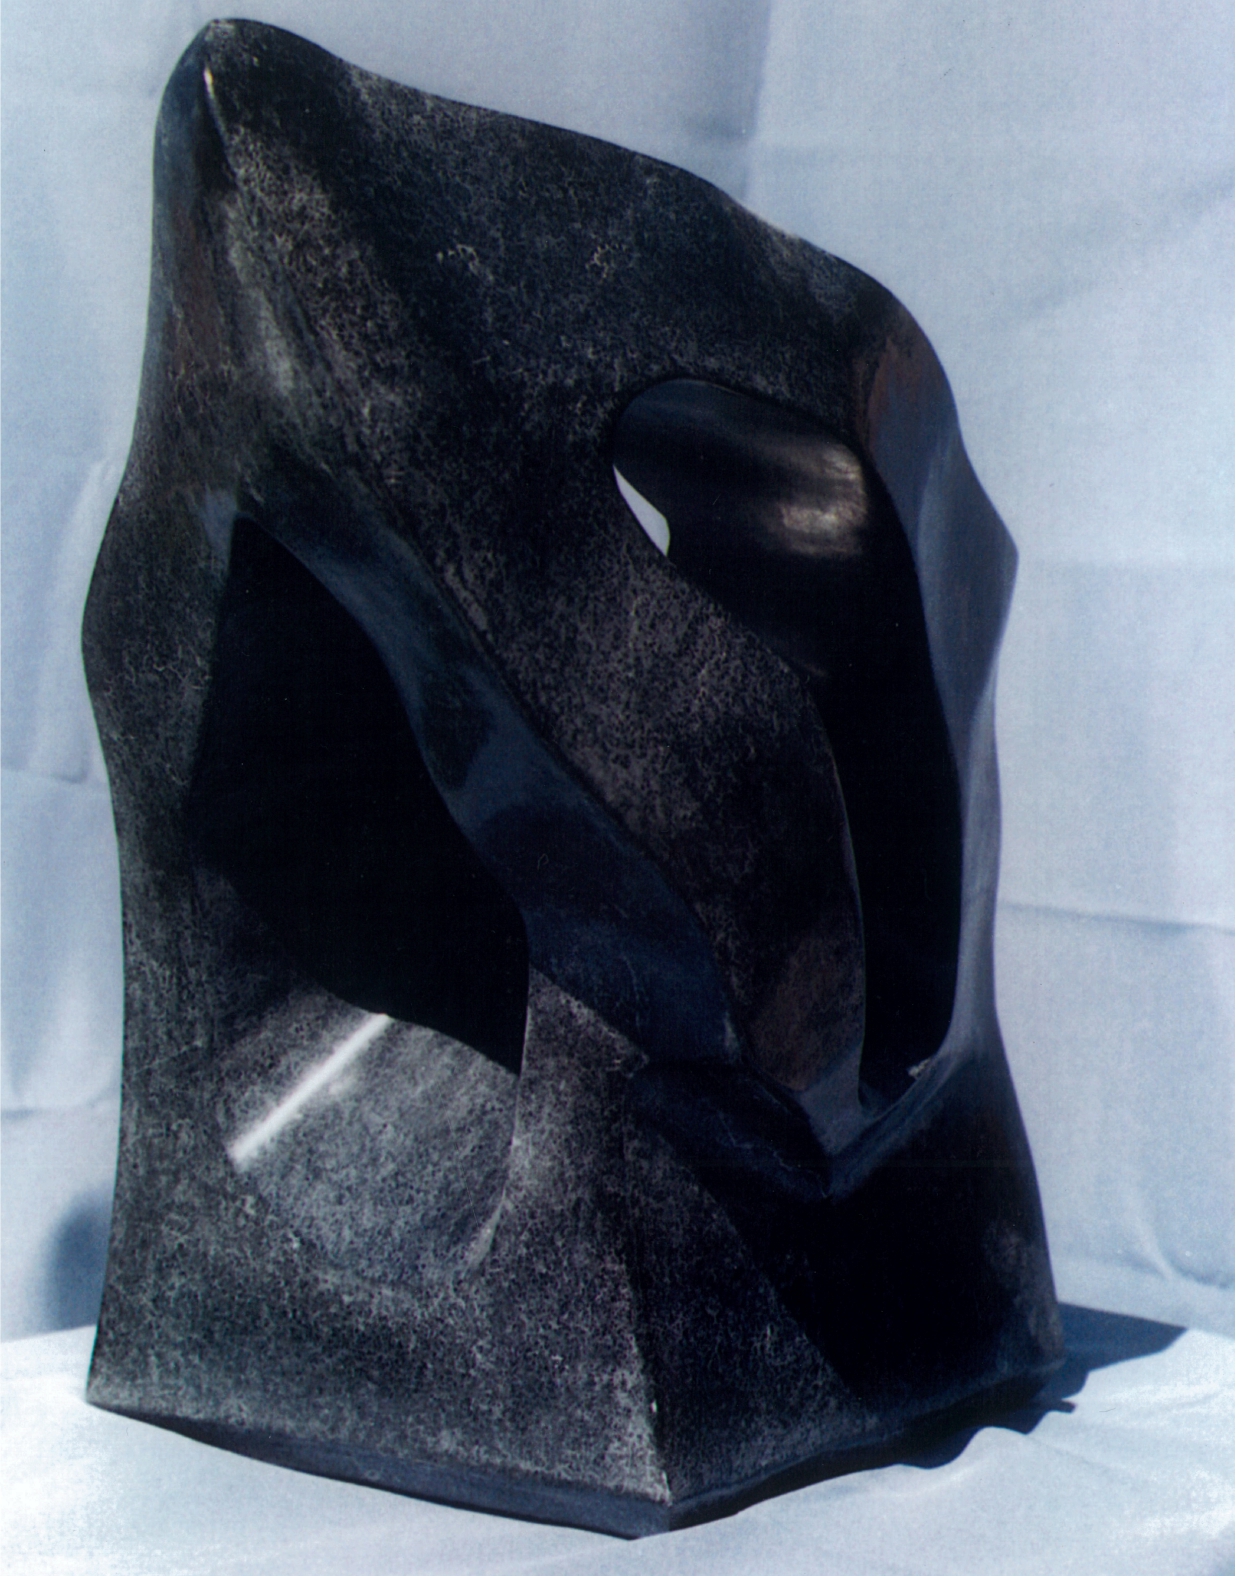 Raven's Peak - 1999 - Carved from Black Sandstone. Artist: Steven Zimmerman